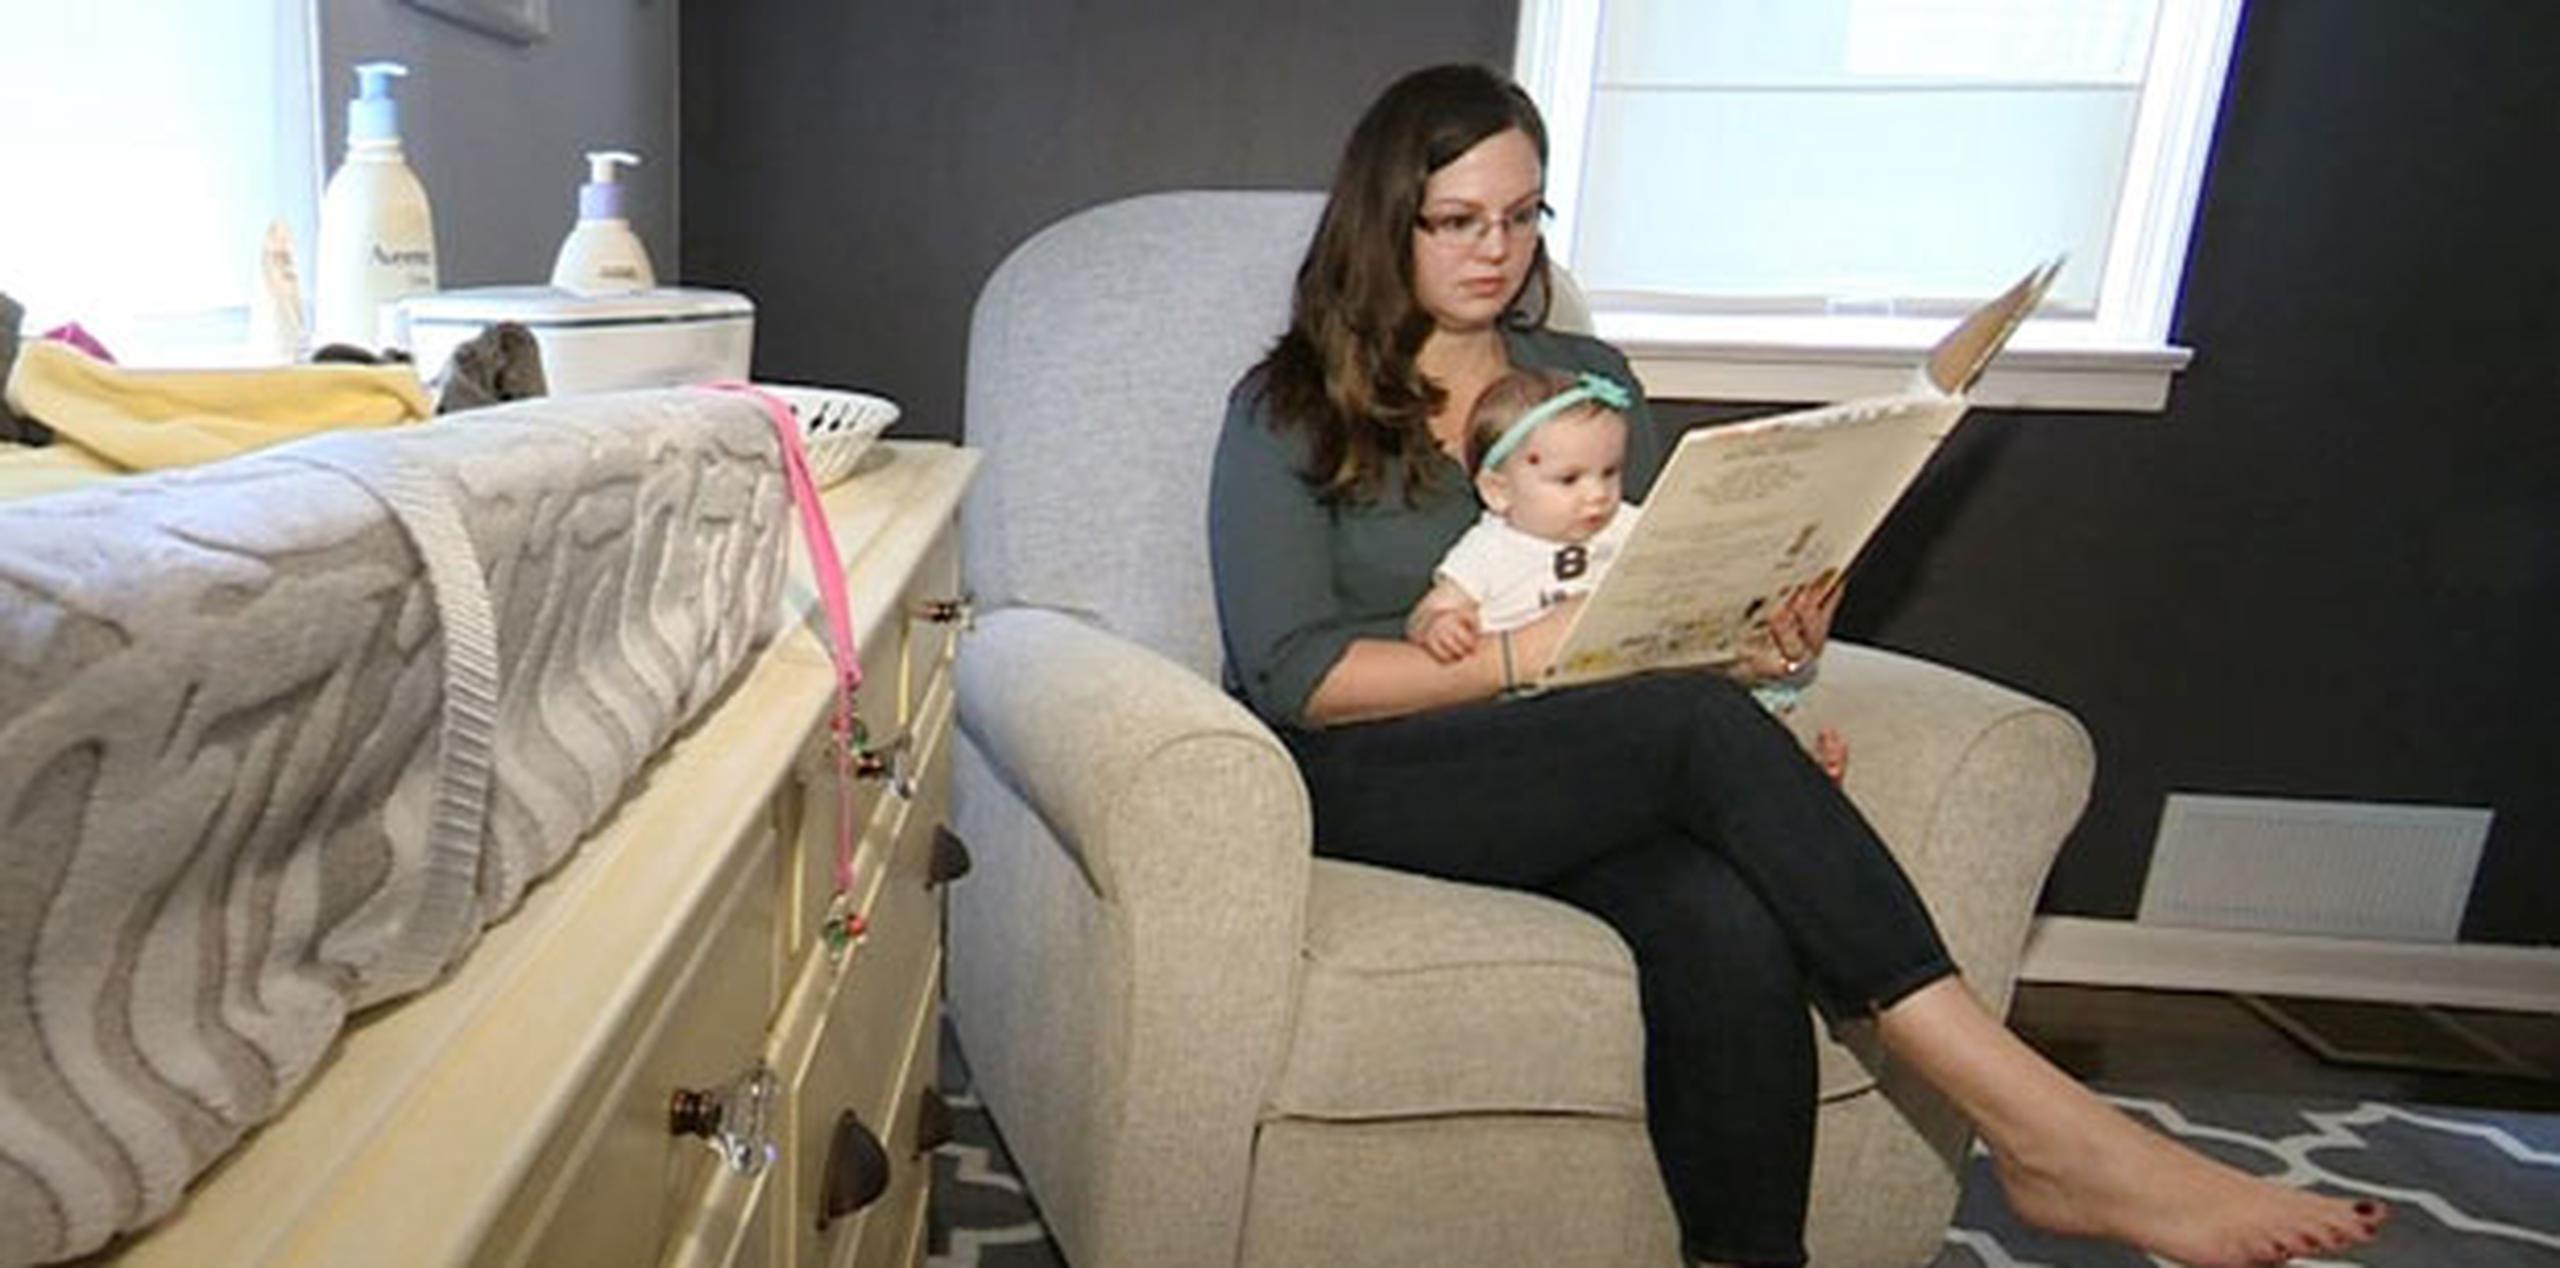 Kelly Mathews,  ingeniera de software en Chalfont, Pennsylvania, junto con su hija de 9 meses, Marilyn. (AP)
